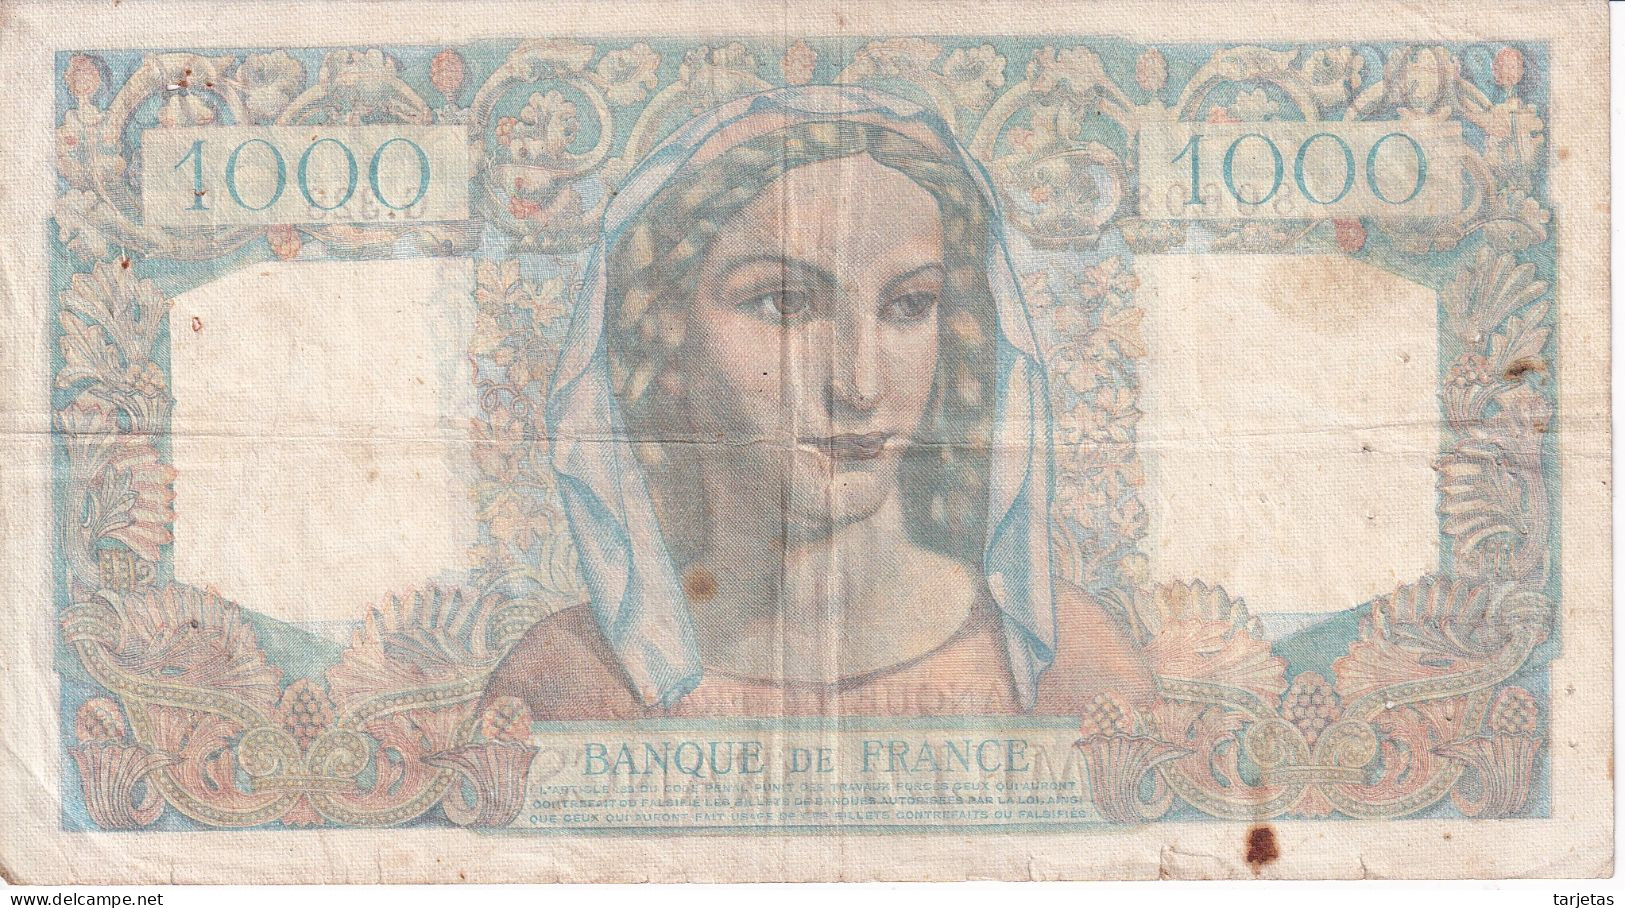 BILLETE DE FRANCIA DE 1000 FRANCS DEL AÑO 1946 (BANKNOTE) MINERVE ET HERCULE - 1 000 F 1945-1950 ''Minerve Et Hercule''